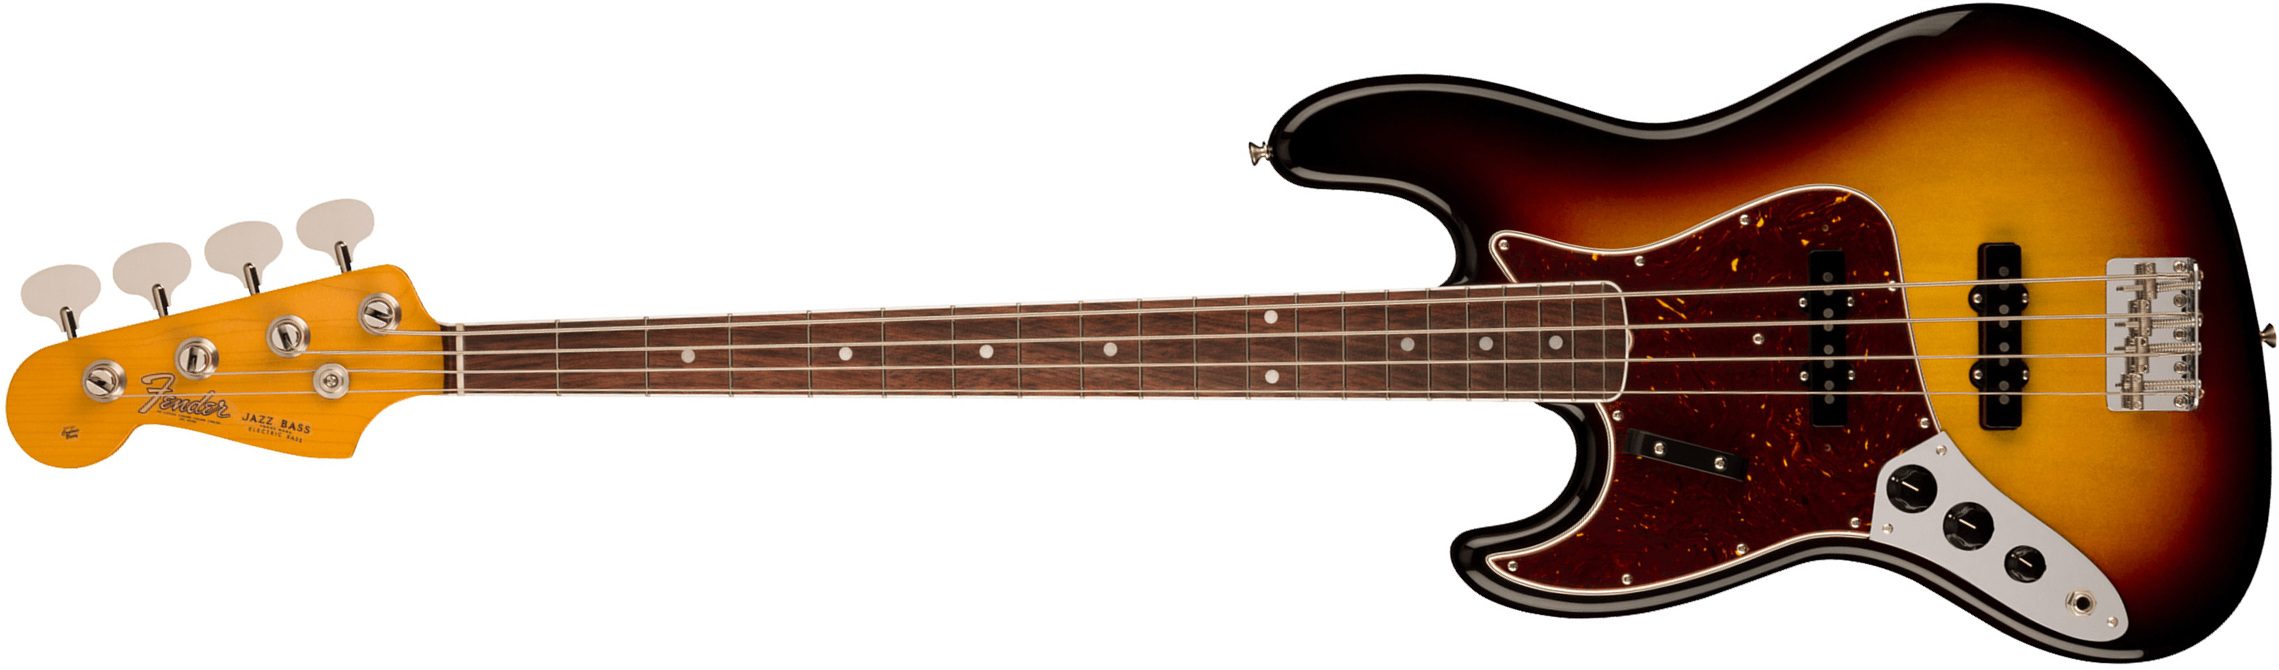 Fender Jazz Bass 1966 American Vintage Ii Lh Gaucher Usa Rw - 3-color Sunburst - Solid body elektrische bas - Main picture